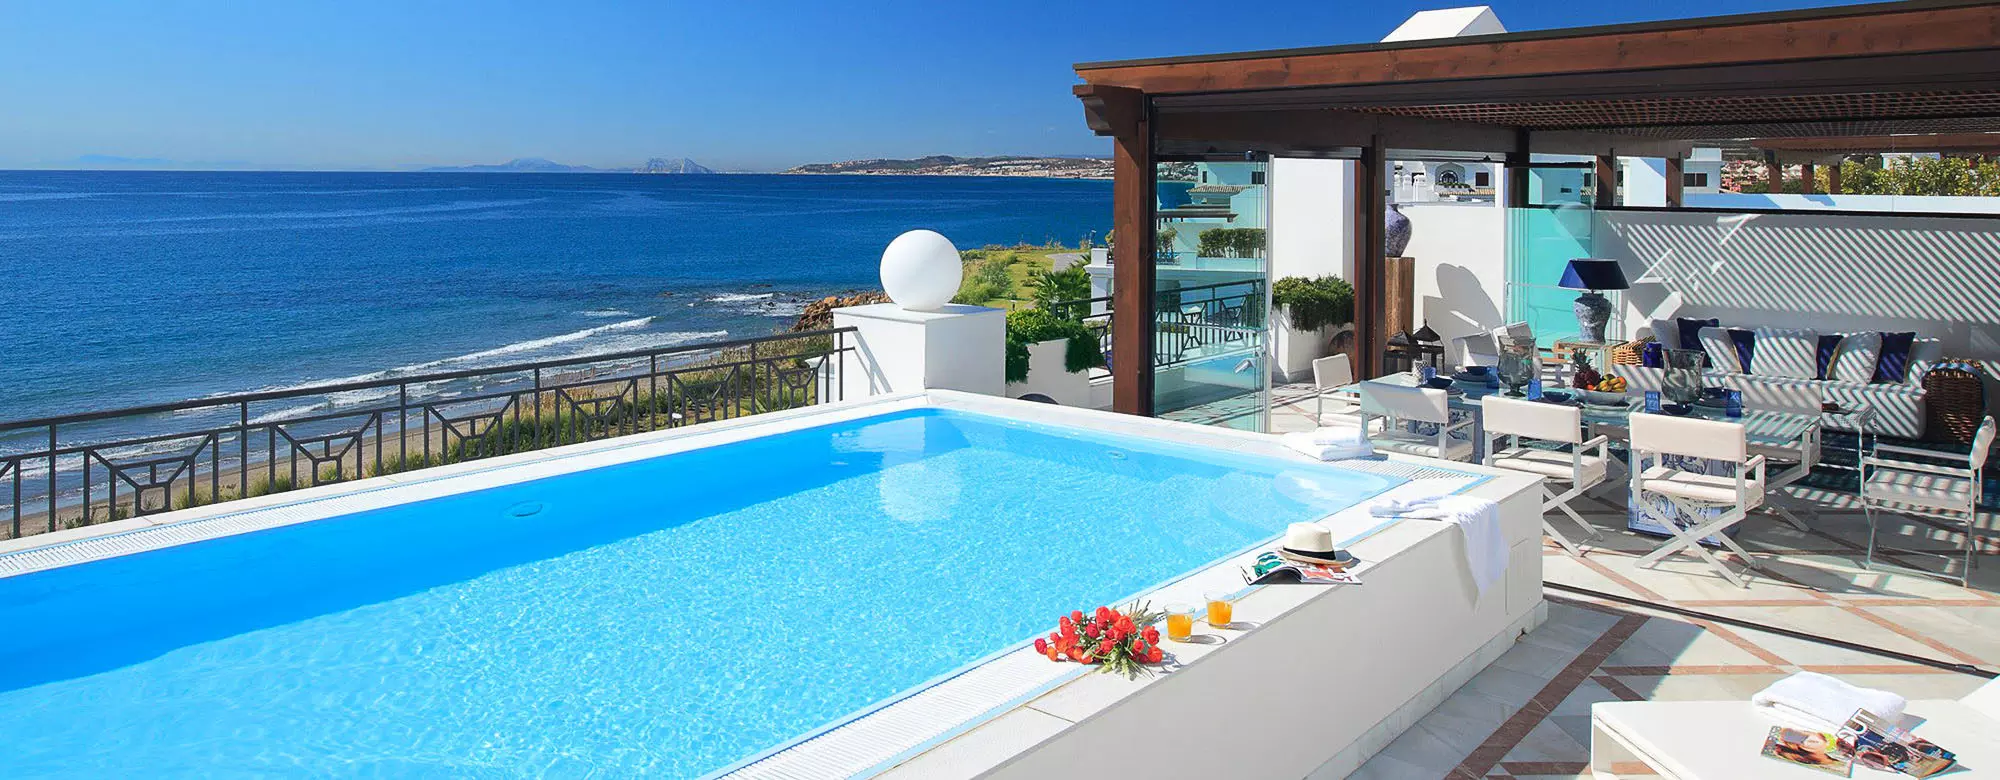 Immobilier Espagne front de mer